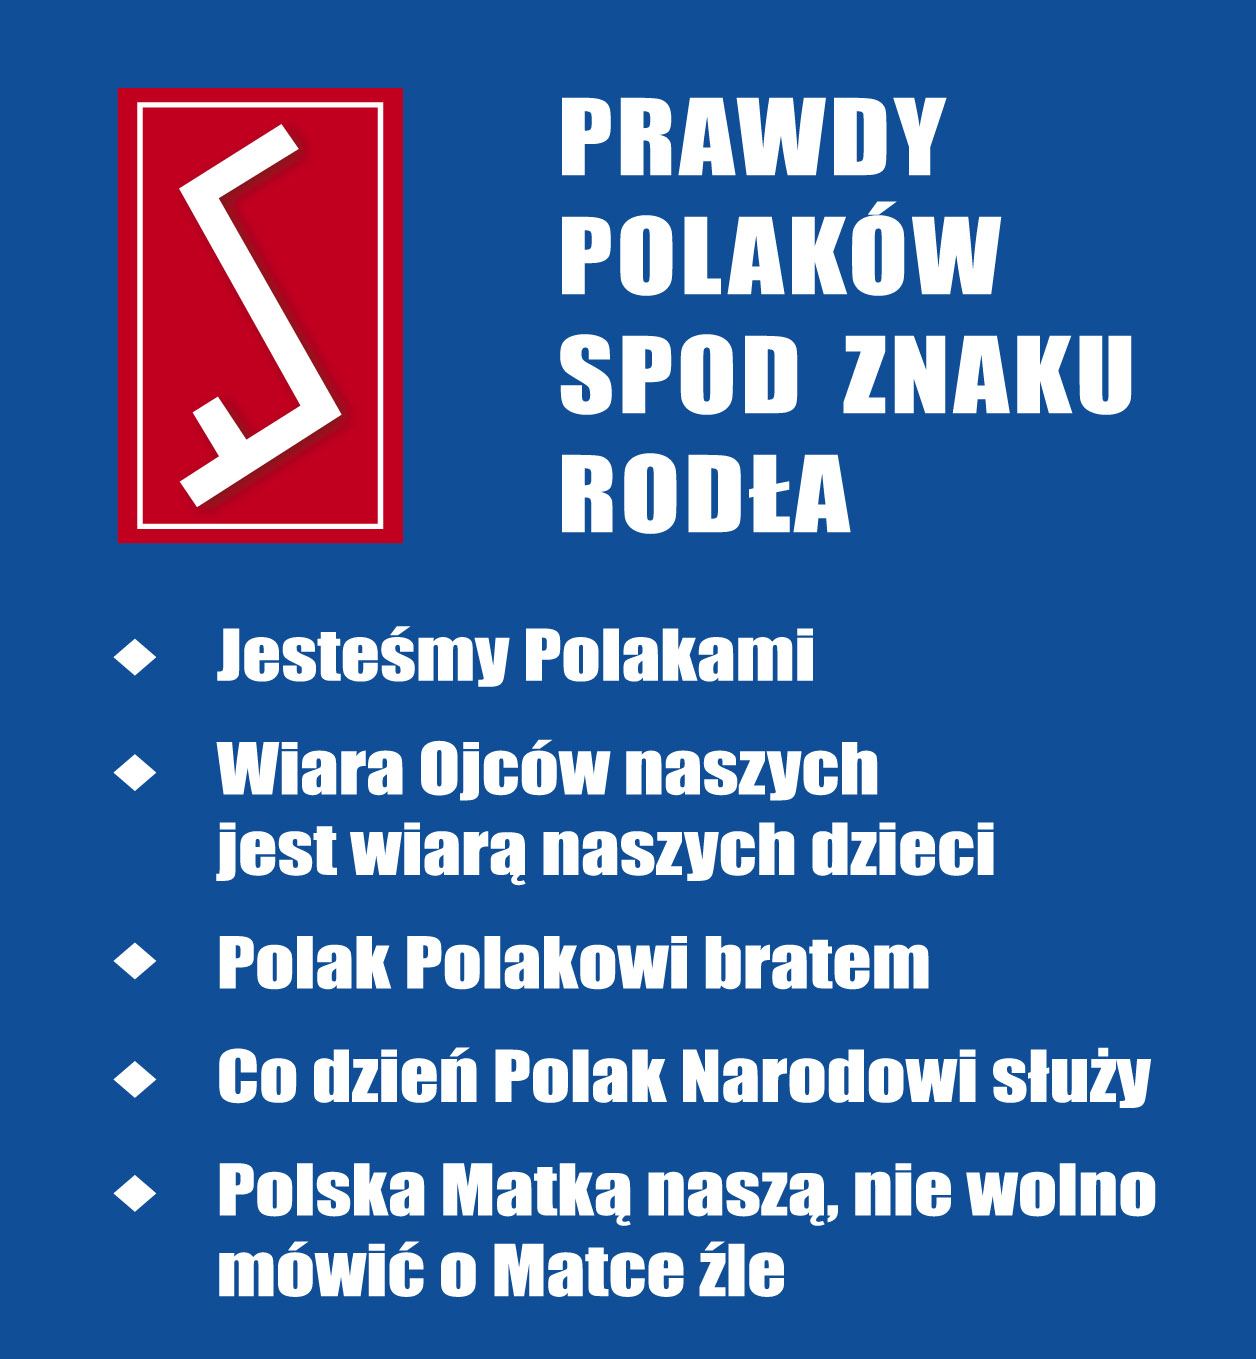 Treść pięciu prawd Polaków spod Znaku Rodła, nazwanych katechizmem narodowym Polaków w dwudziestym pierwszym wieku